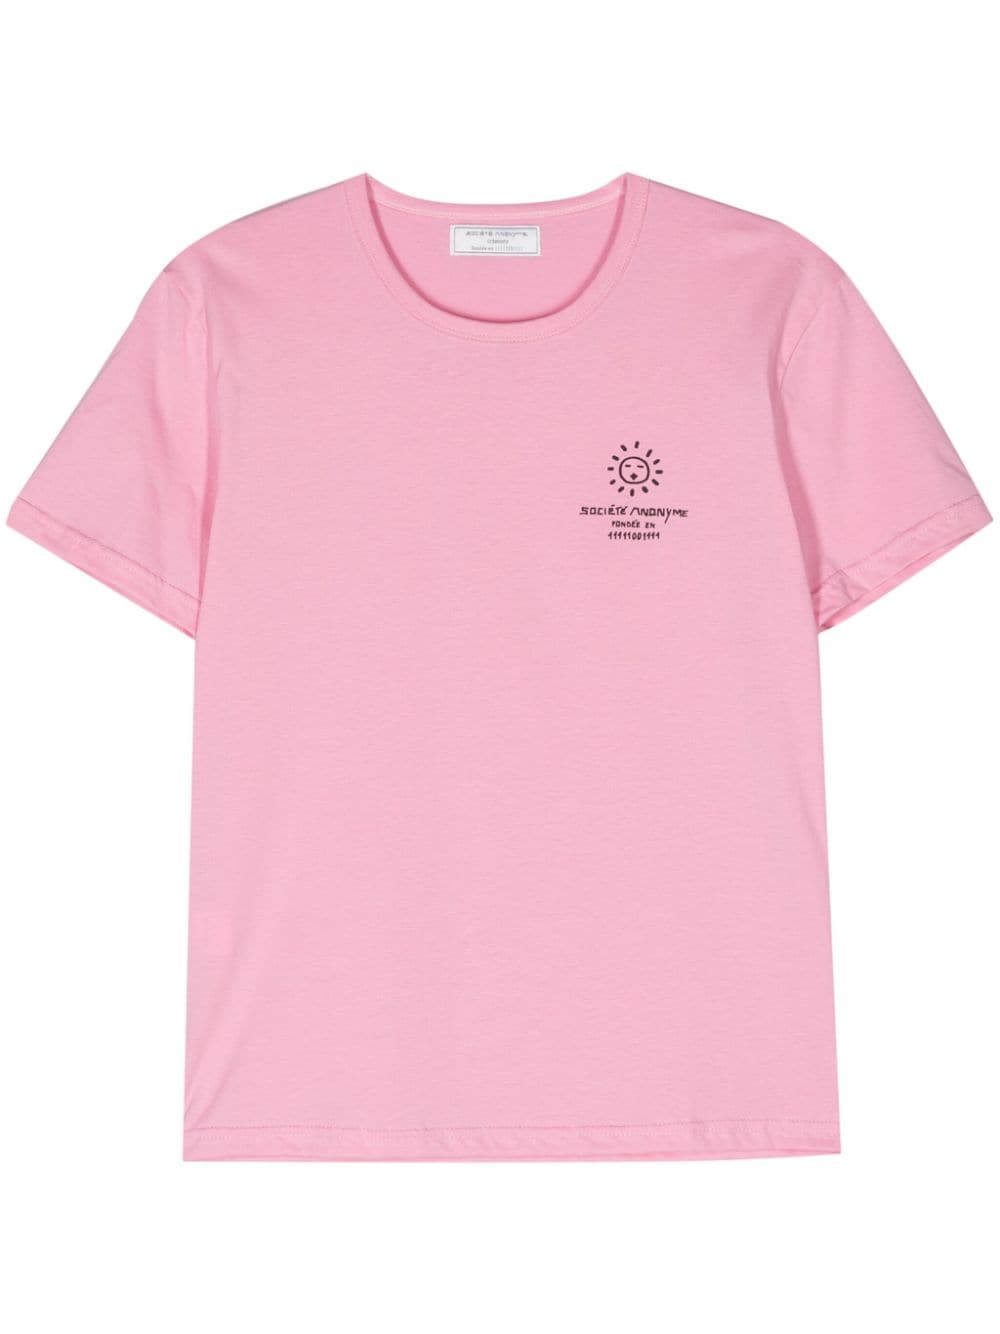 Société Anonyme Bas Cotton T-shirt In Pink